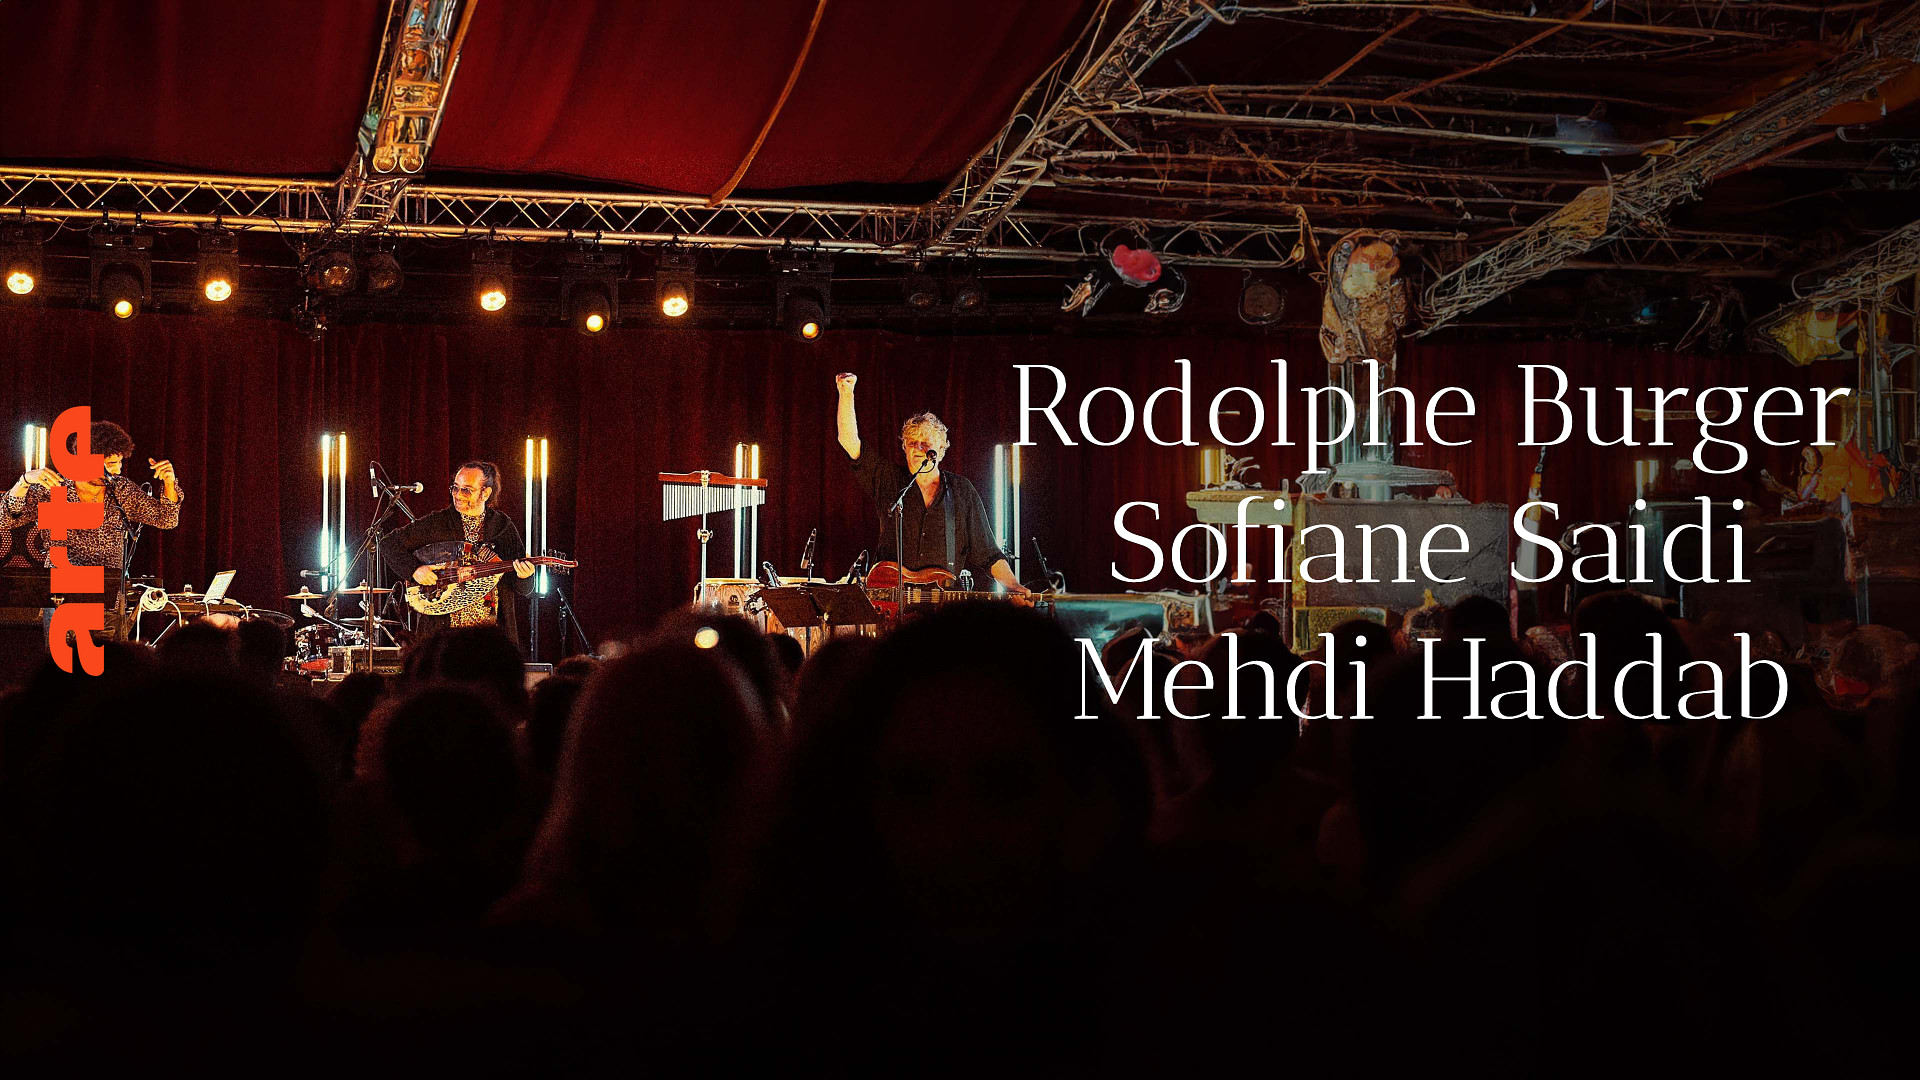 Rodolphe Burger, Sofiane Saidi & Mehdi Haddab: Mademoiselle